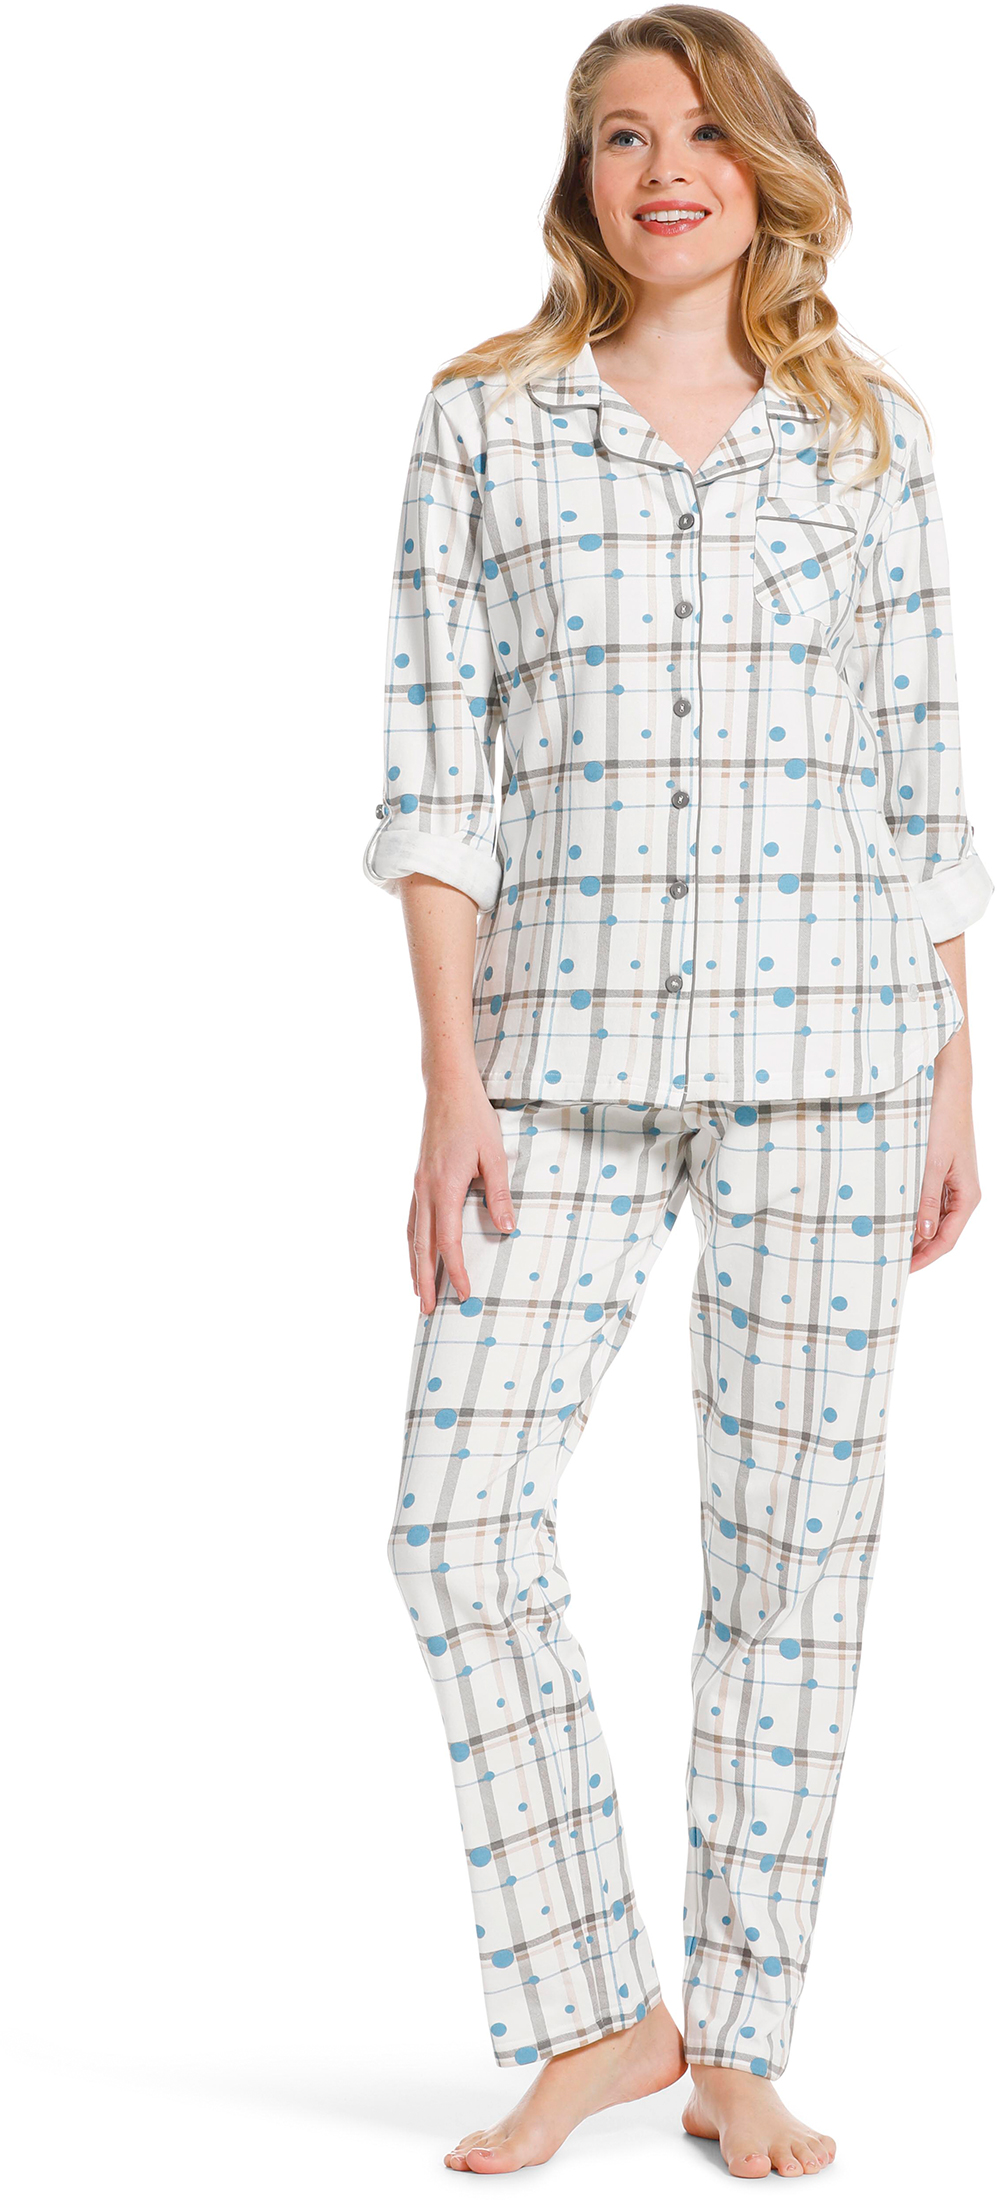 Pastunette dames doorknoop pyjama 20222 142 6 46